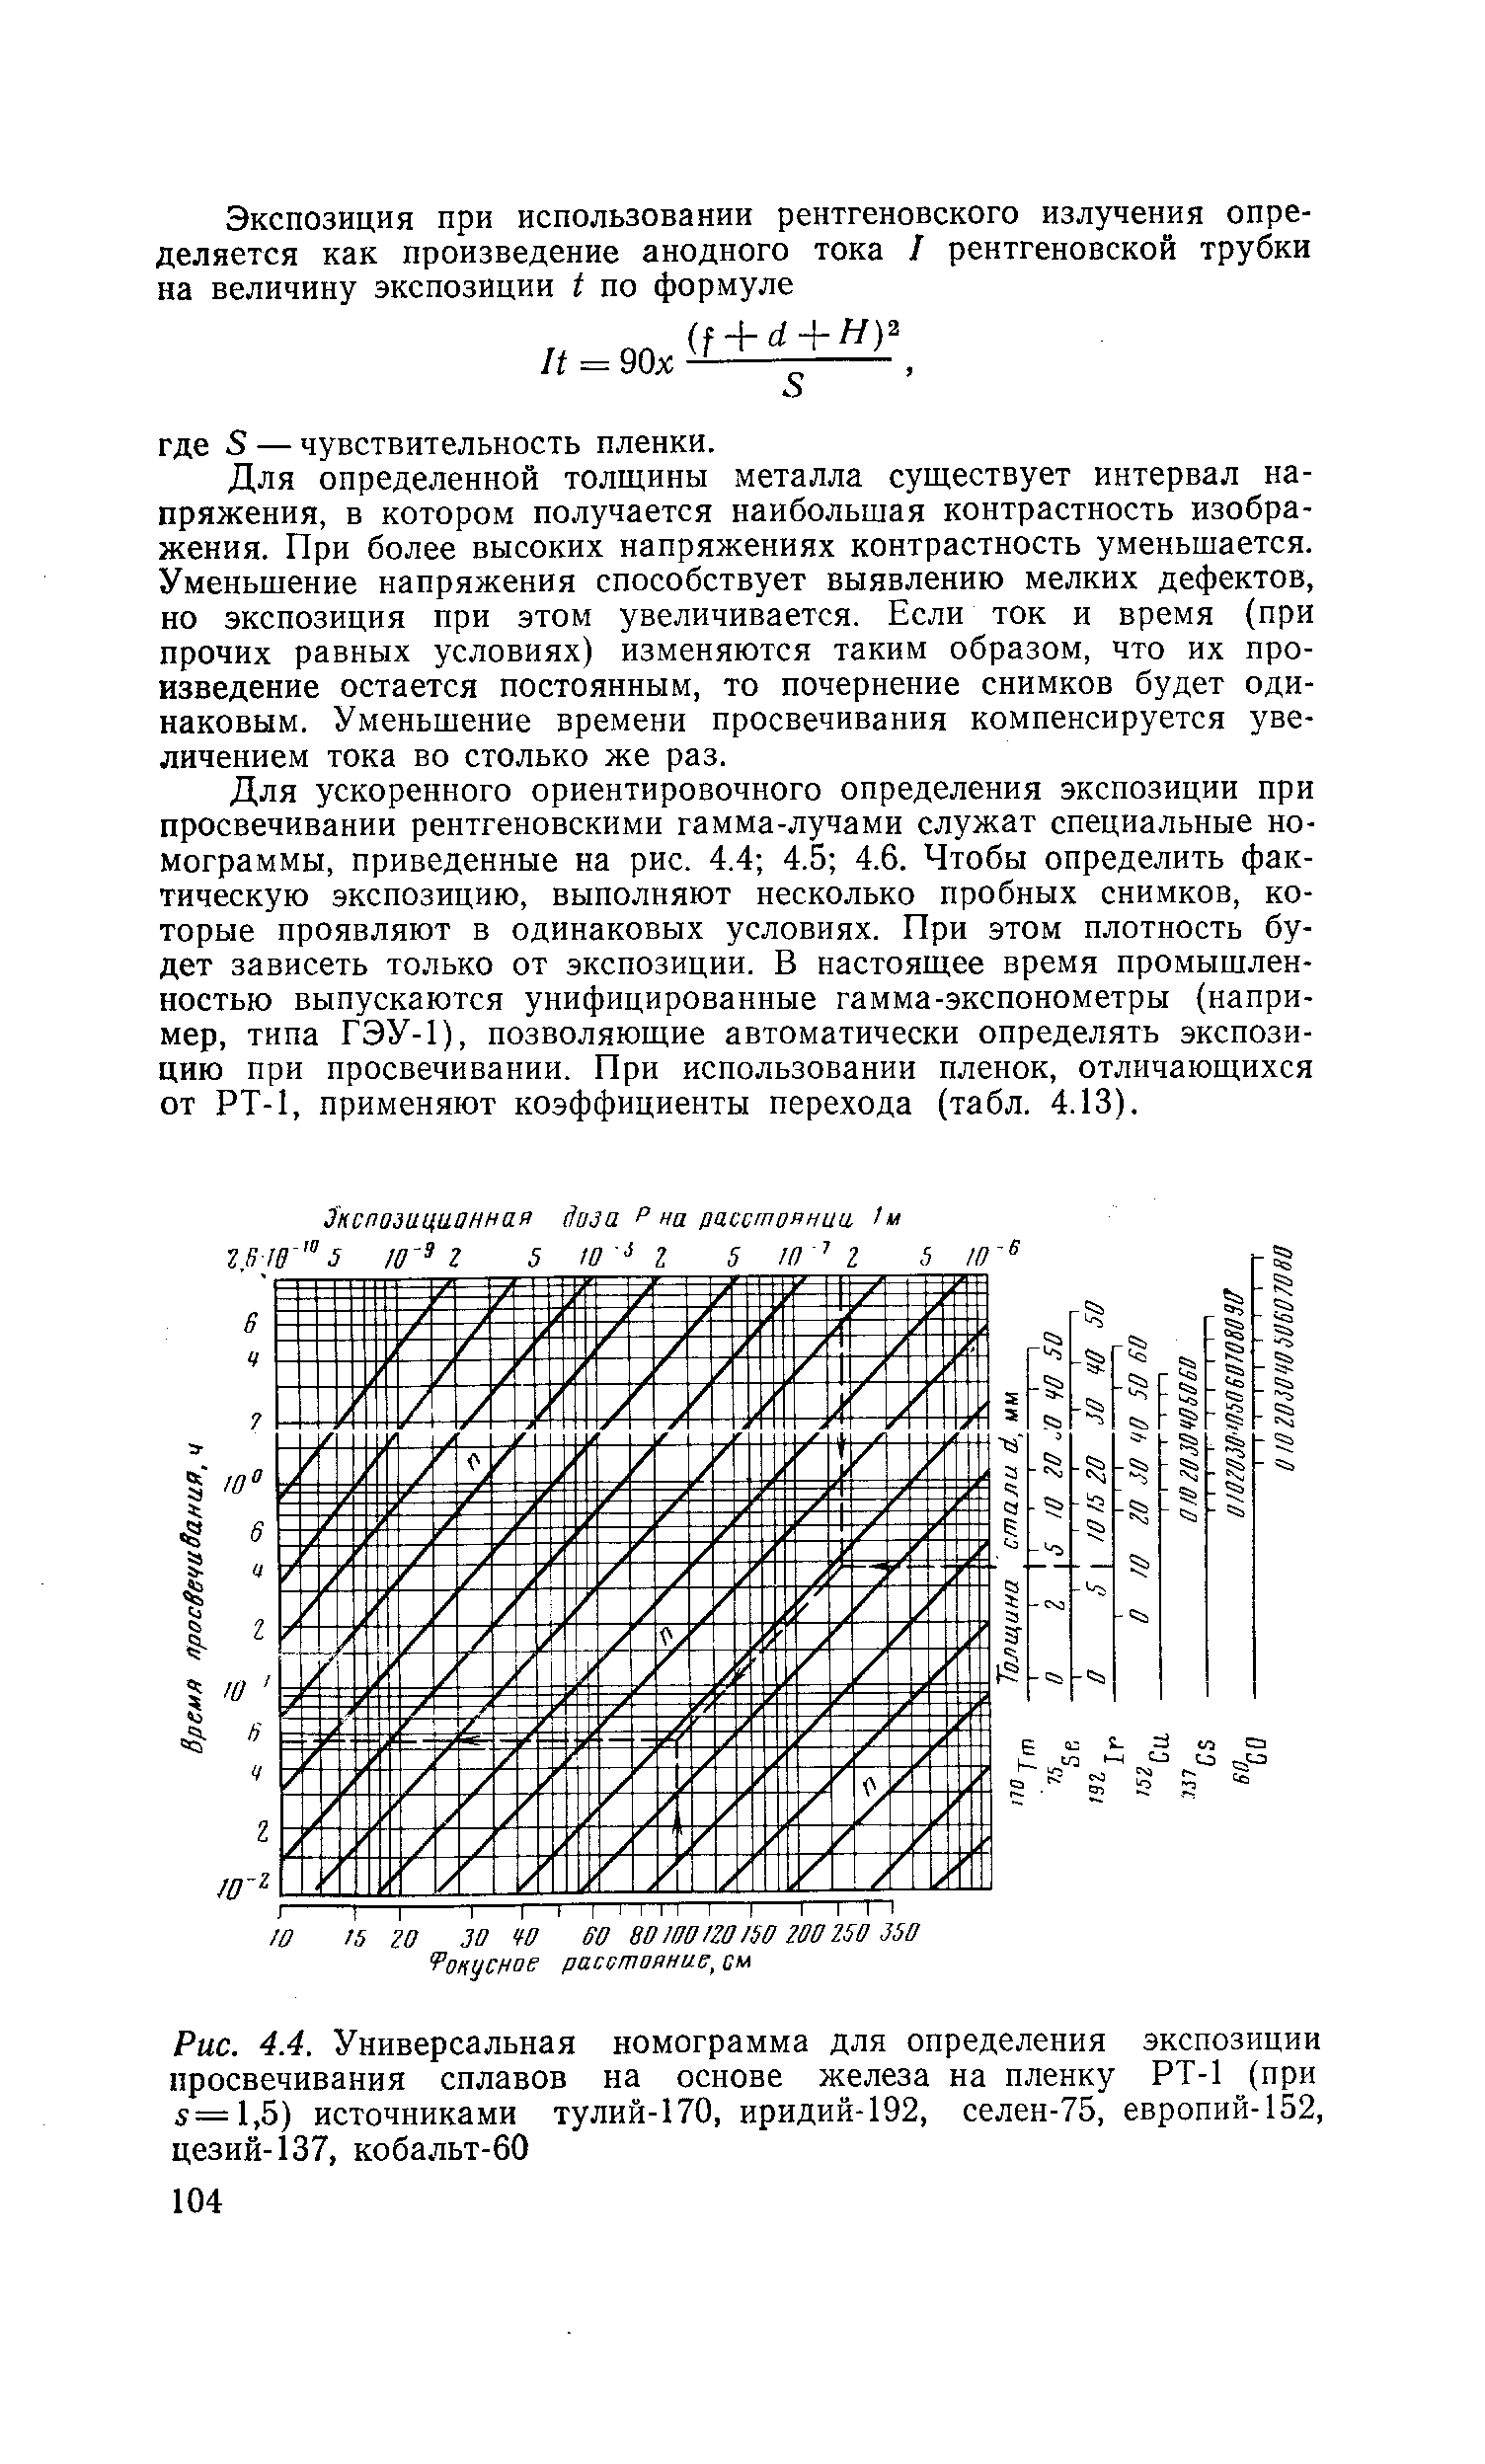 Рис. 4.4. Универсальная номограмма для определения экспозиции просвечивания сплавов на <a href="/info/498176">основе железа</a> на пленку РТ-1 (при 5=1,5) источниками тулий-170, иридий-192, селен-75, европий-152, цезий-137, кобальт-60
